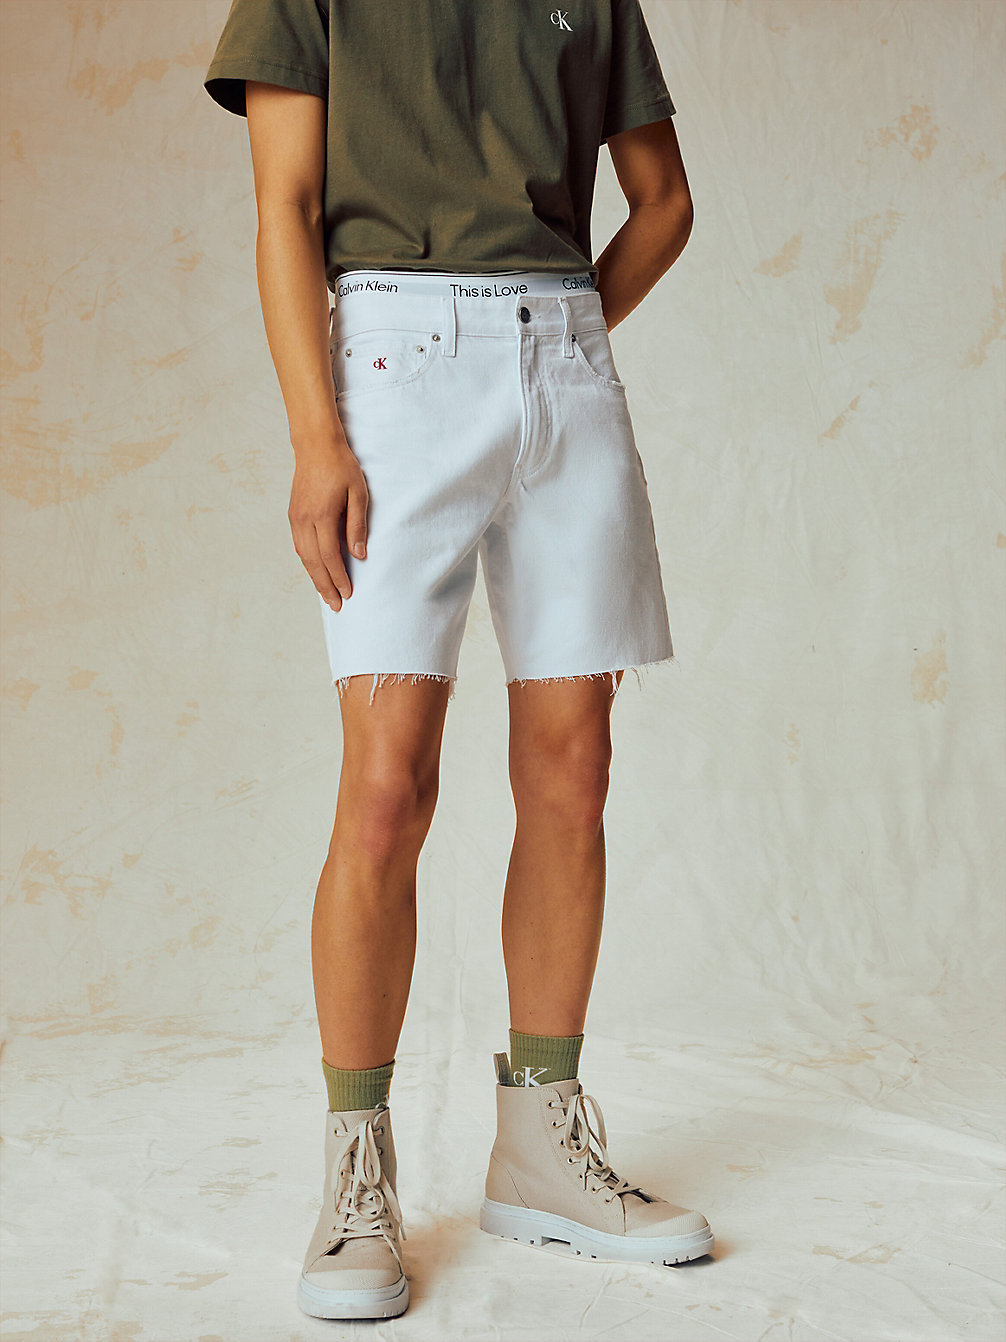 BRIGHT WHITE Denim Shorts - Pride undefined men Calvin Klein